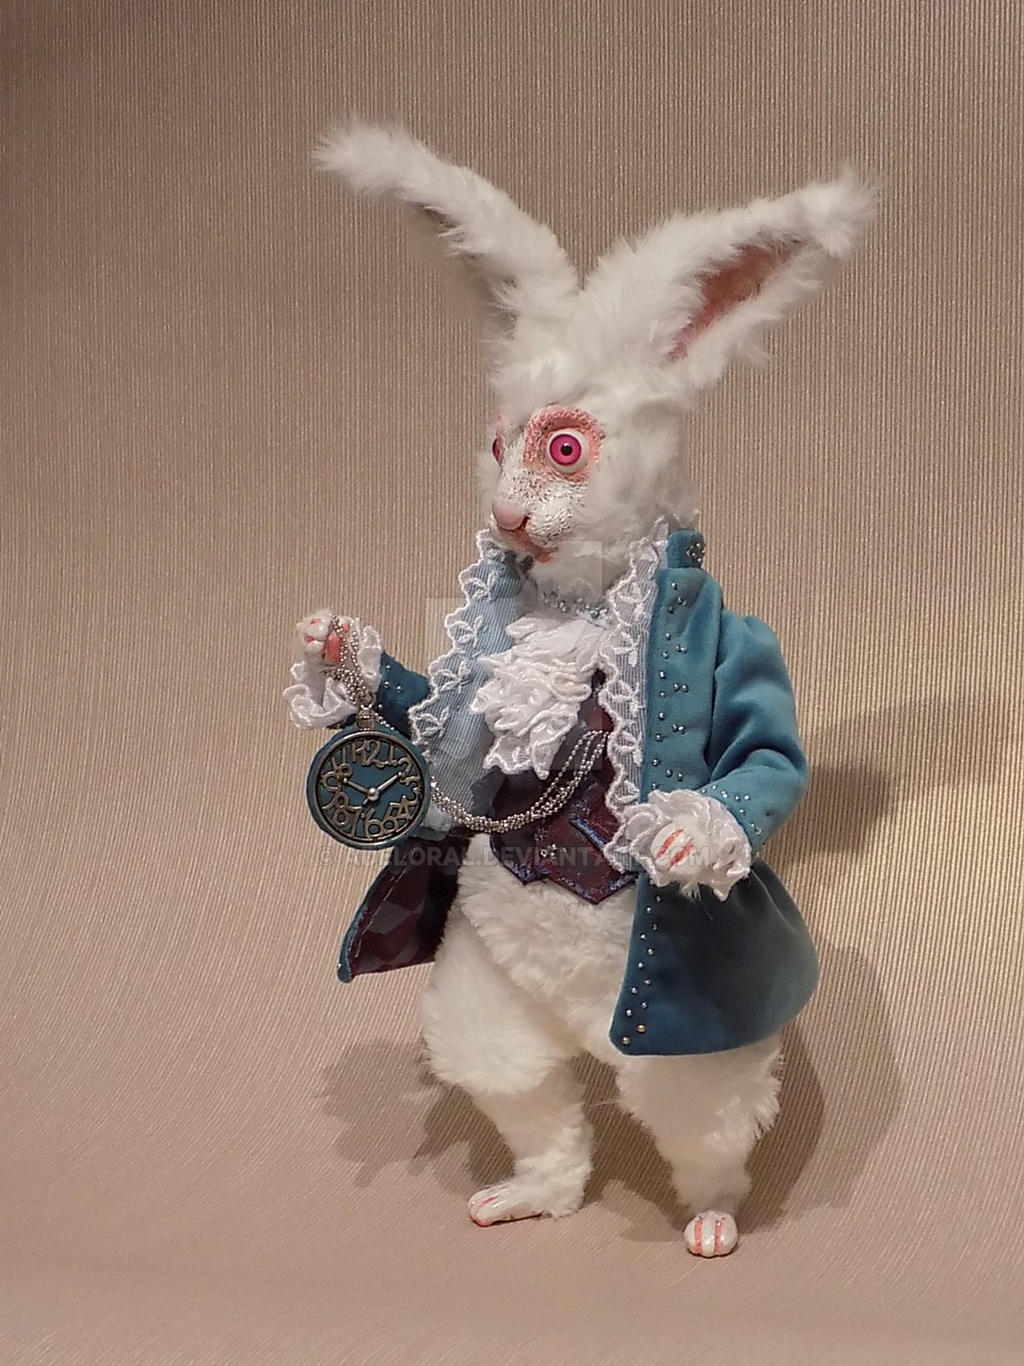 White Rabbit form Allice in Wonderland